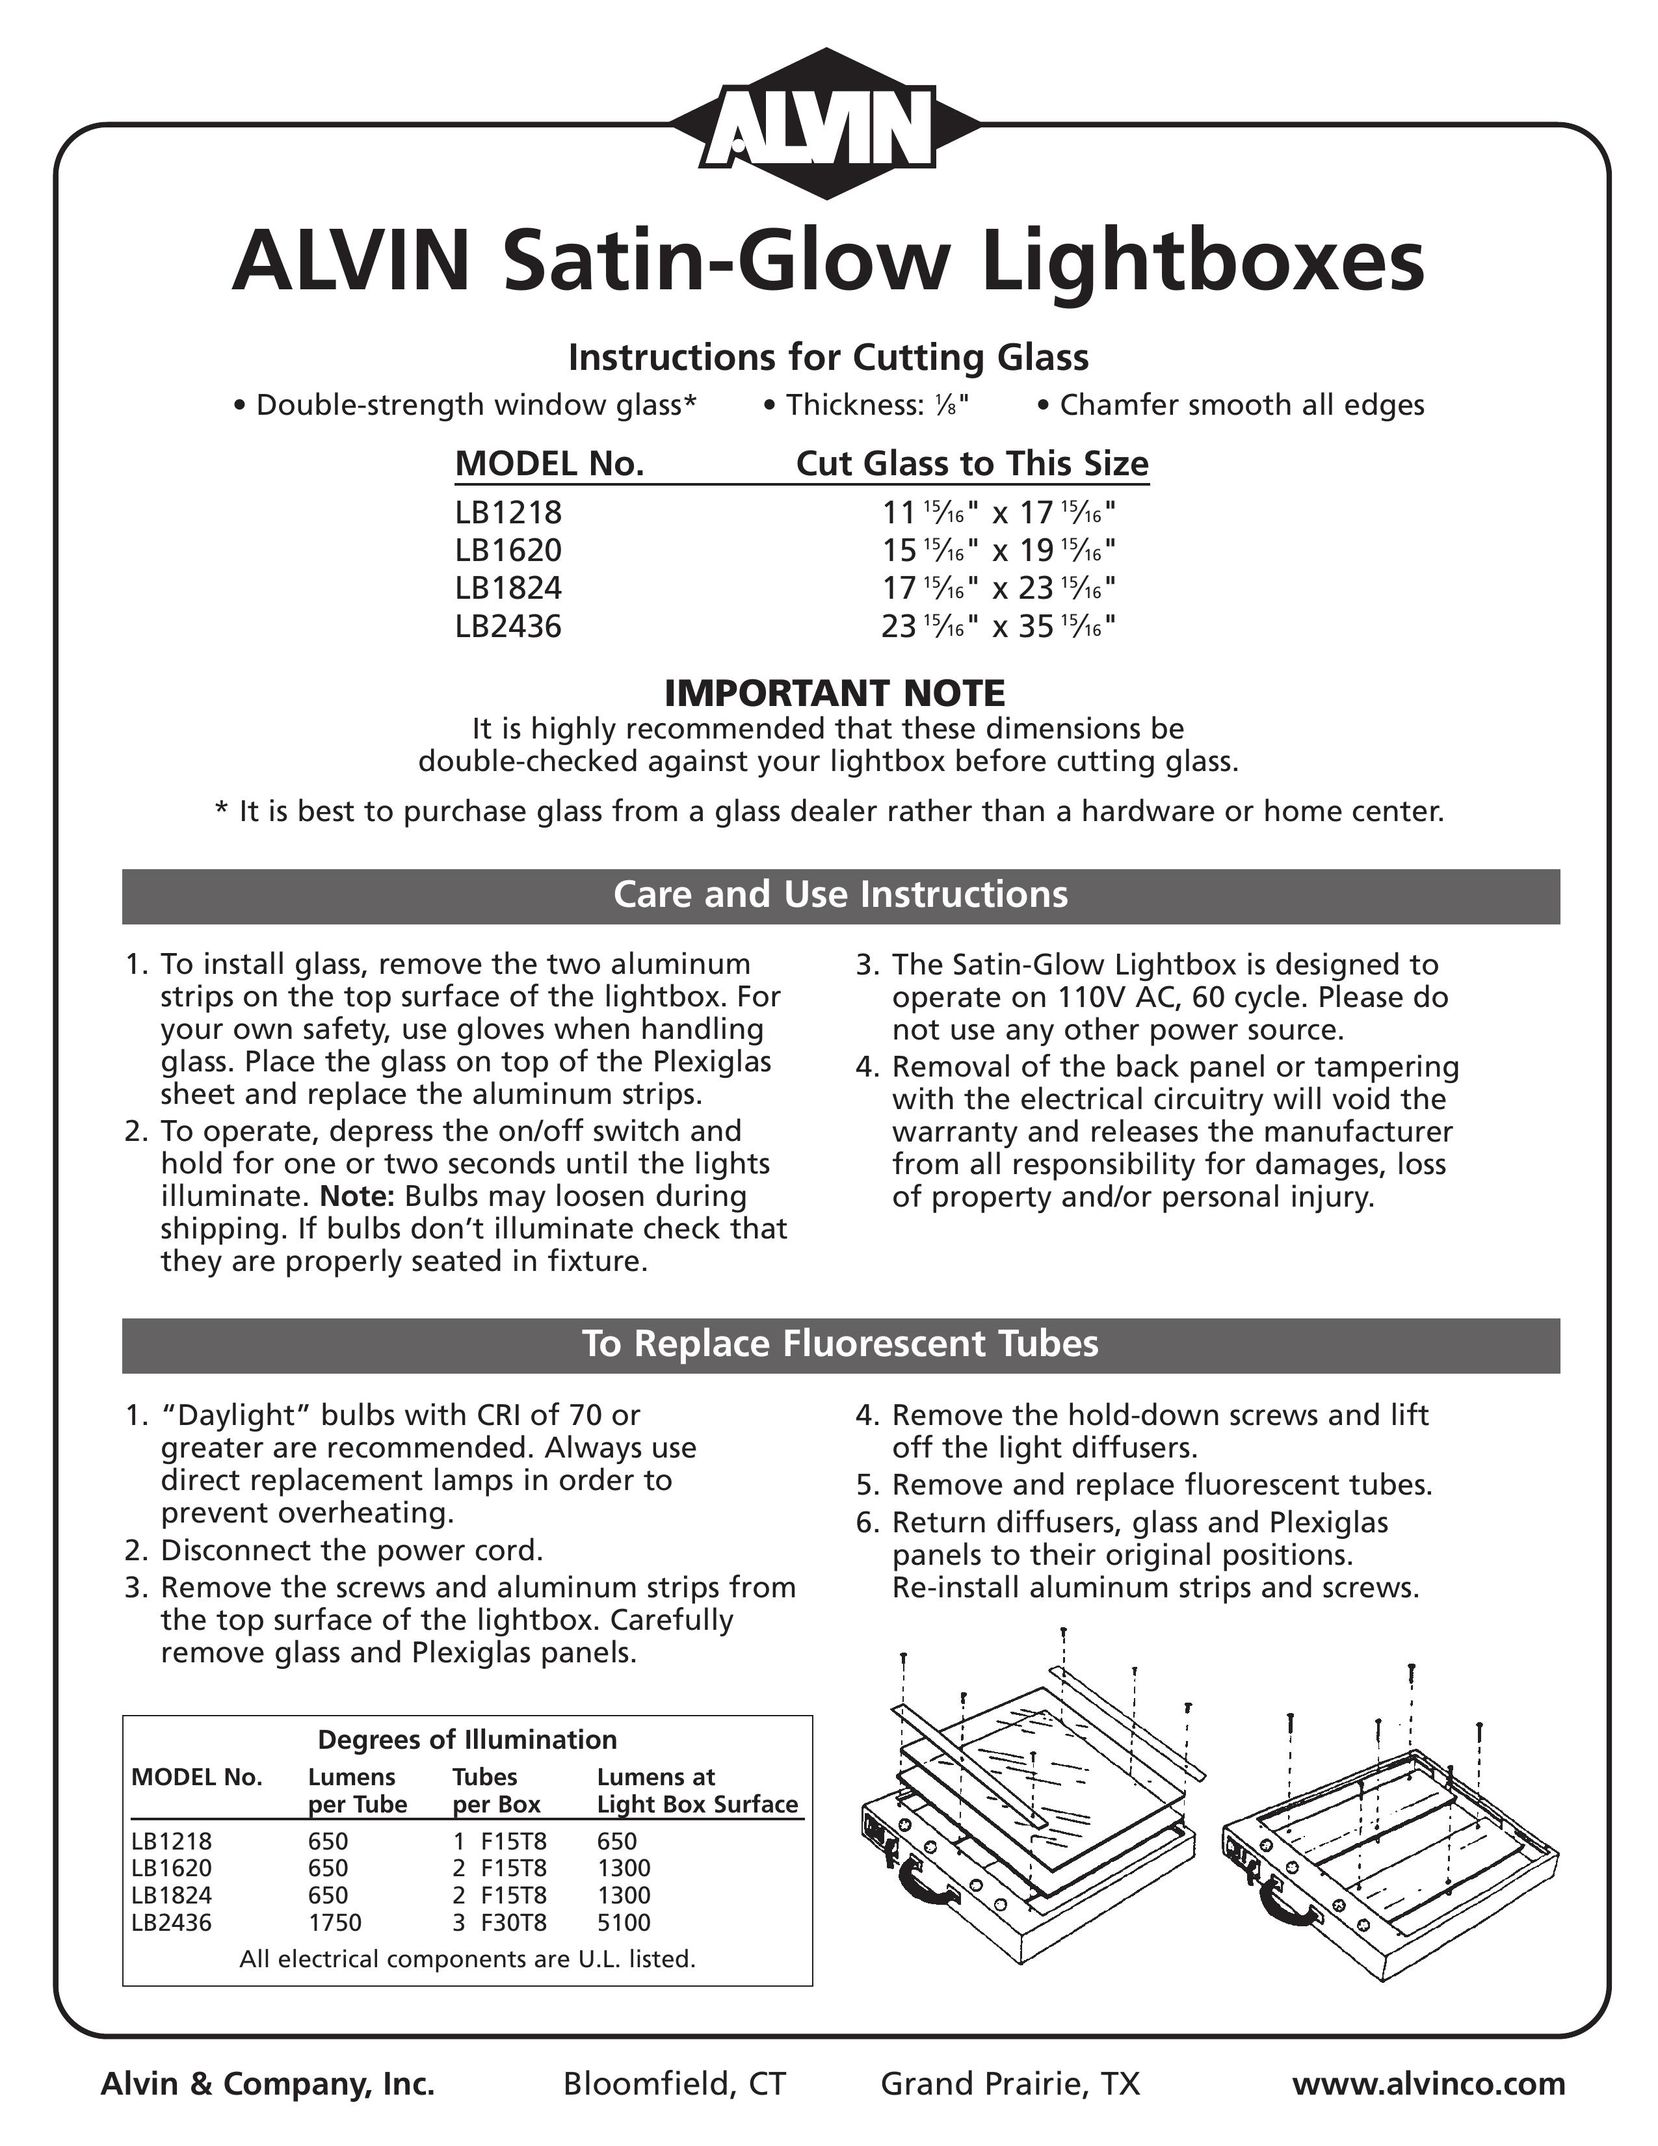 Alvin LB1620 Indoor Furnishings User Manual